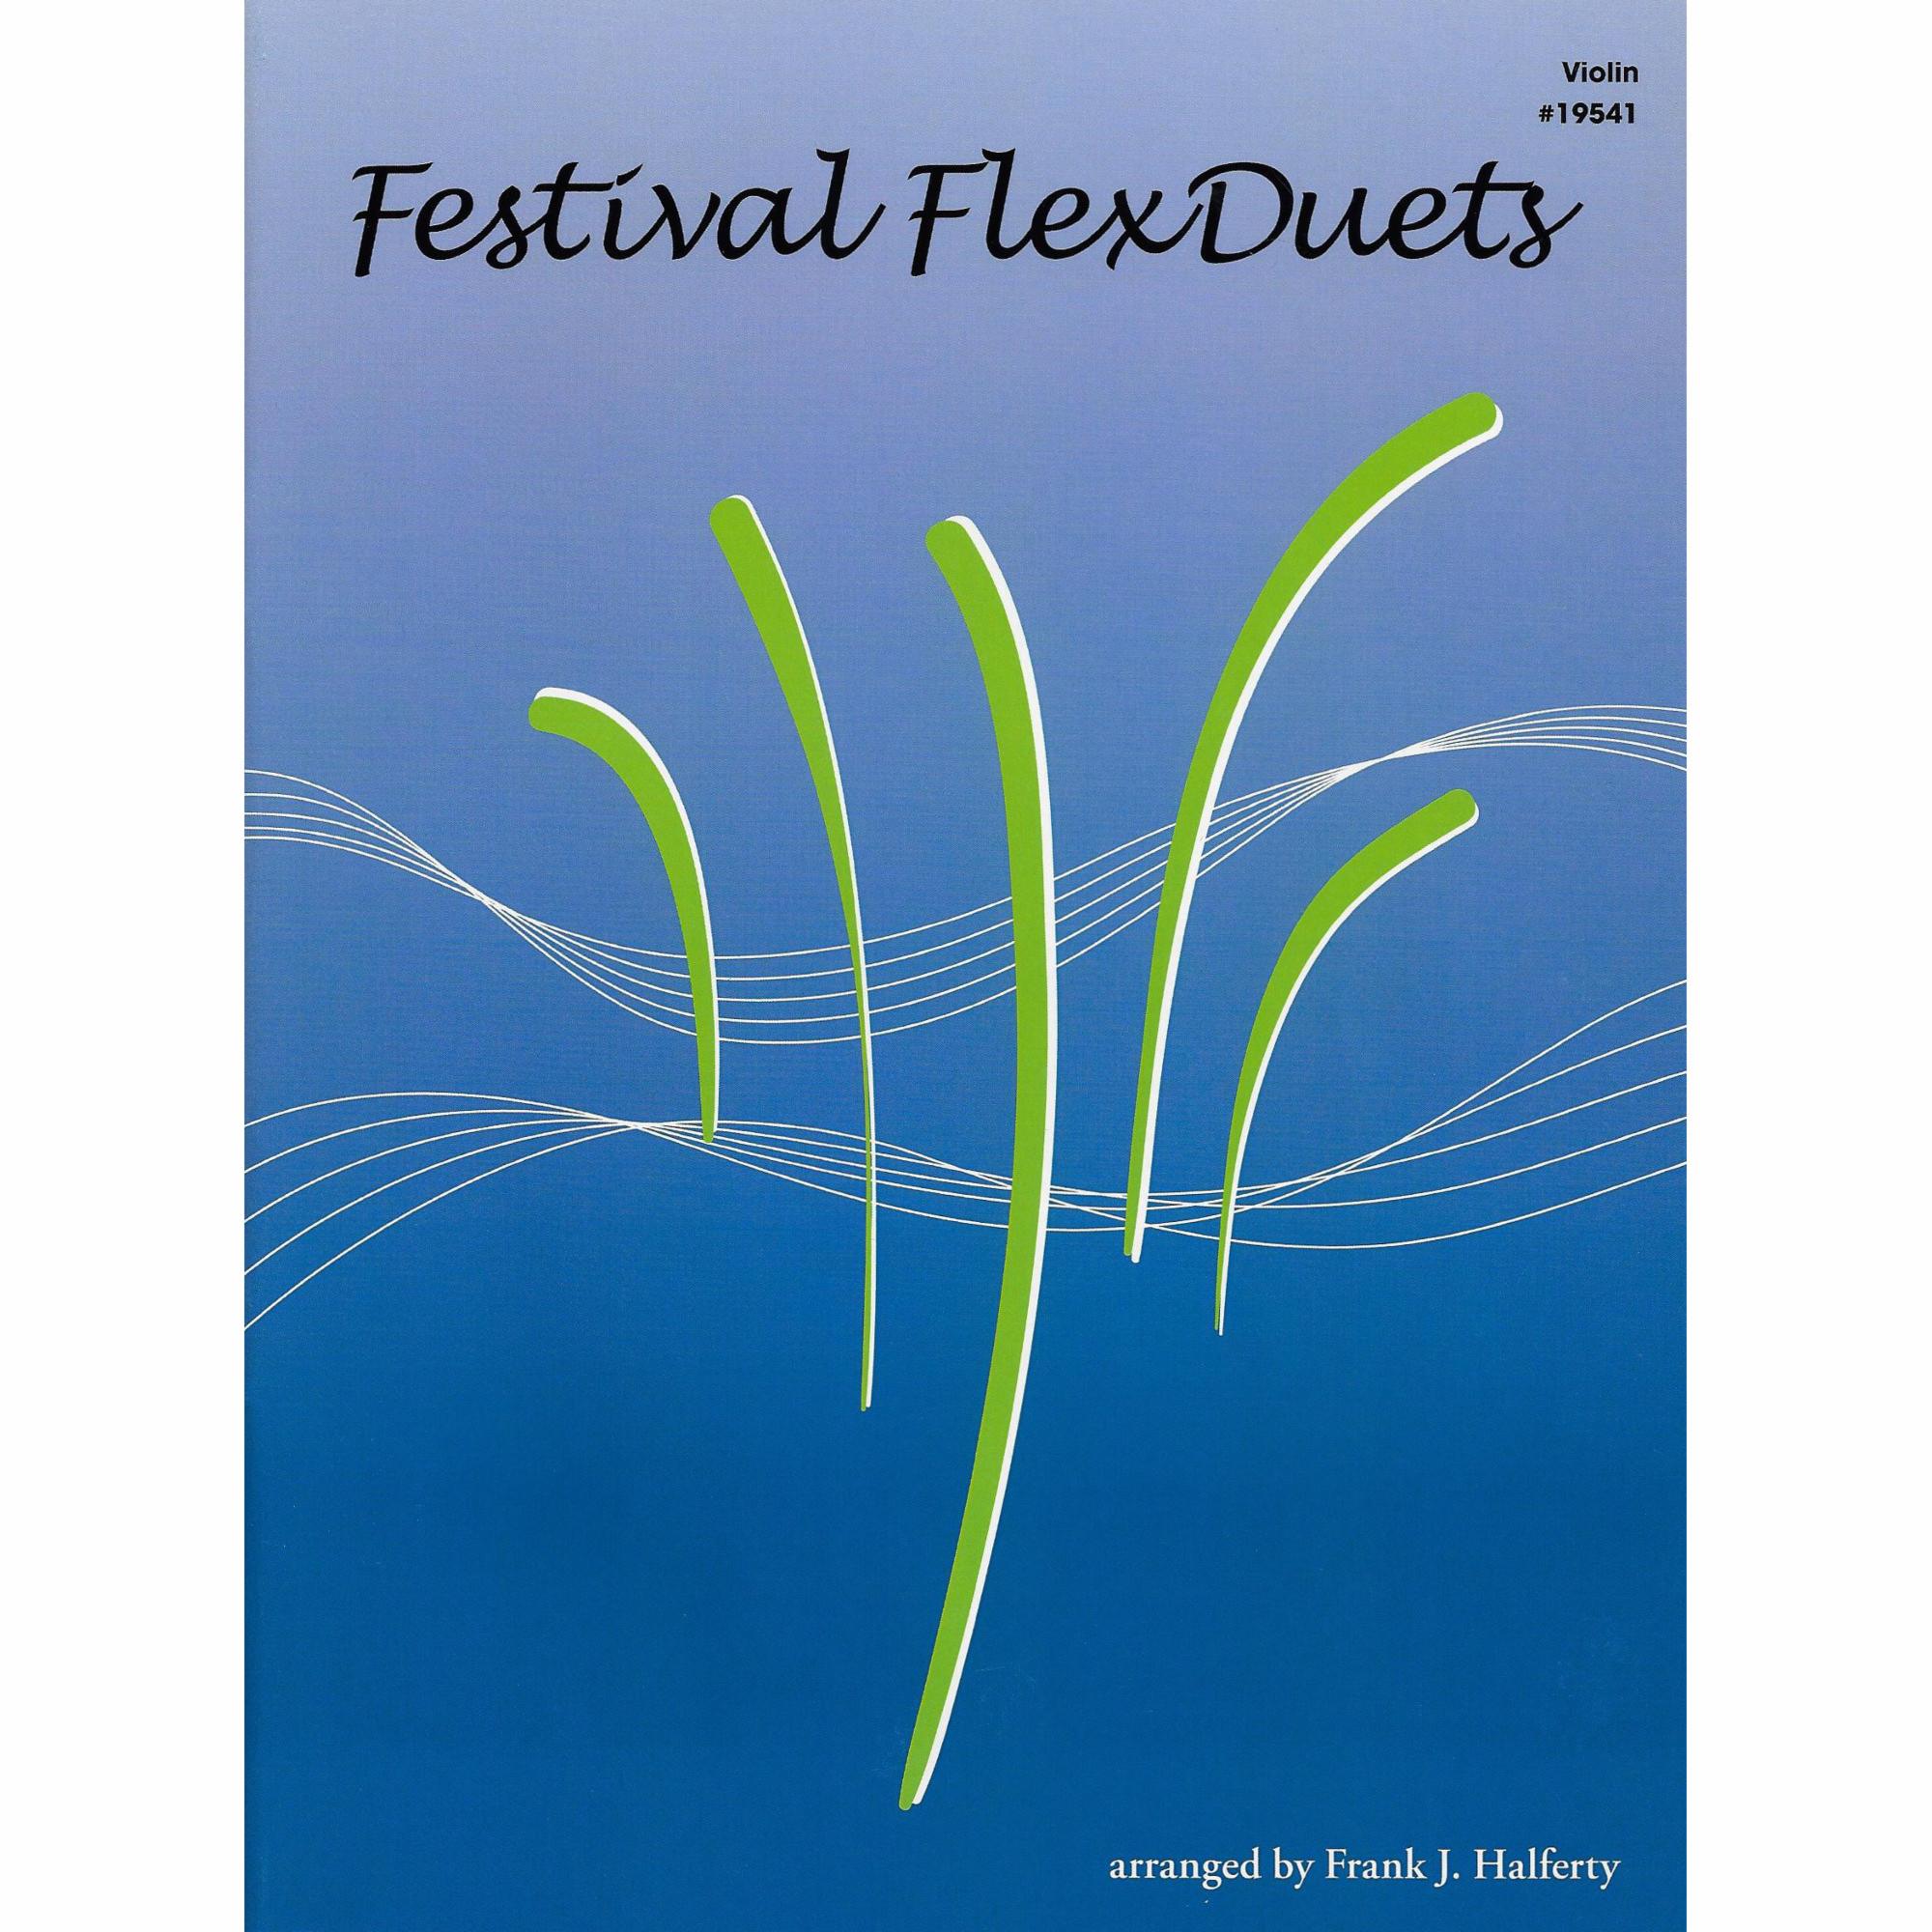 Festival FlexDuets for Violin, Viola, or Cello